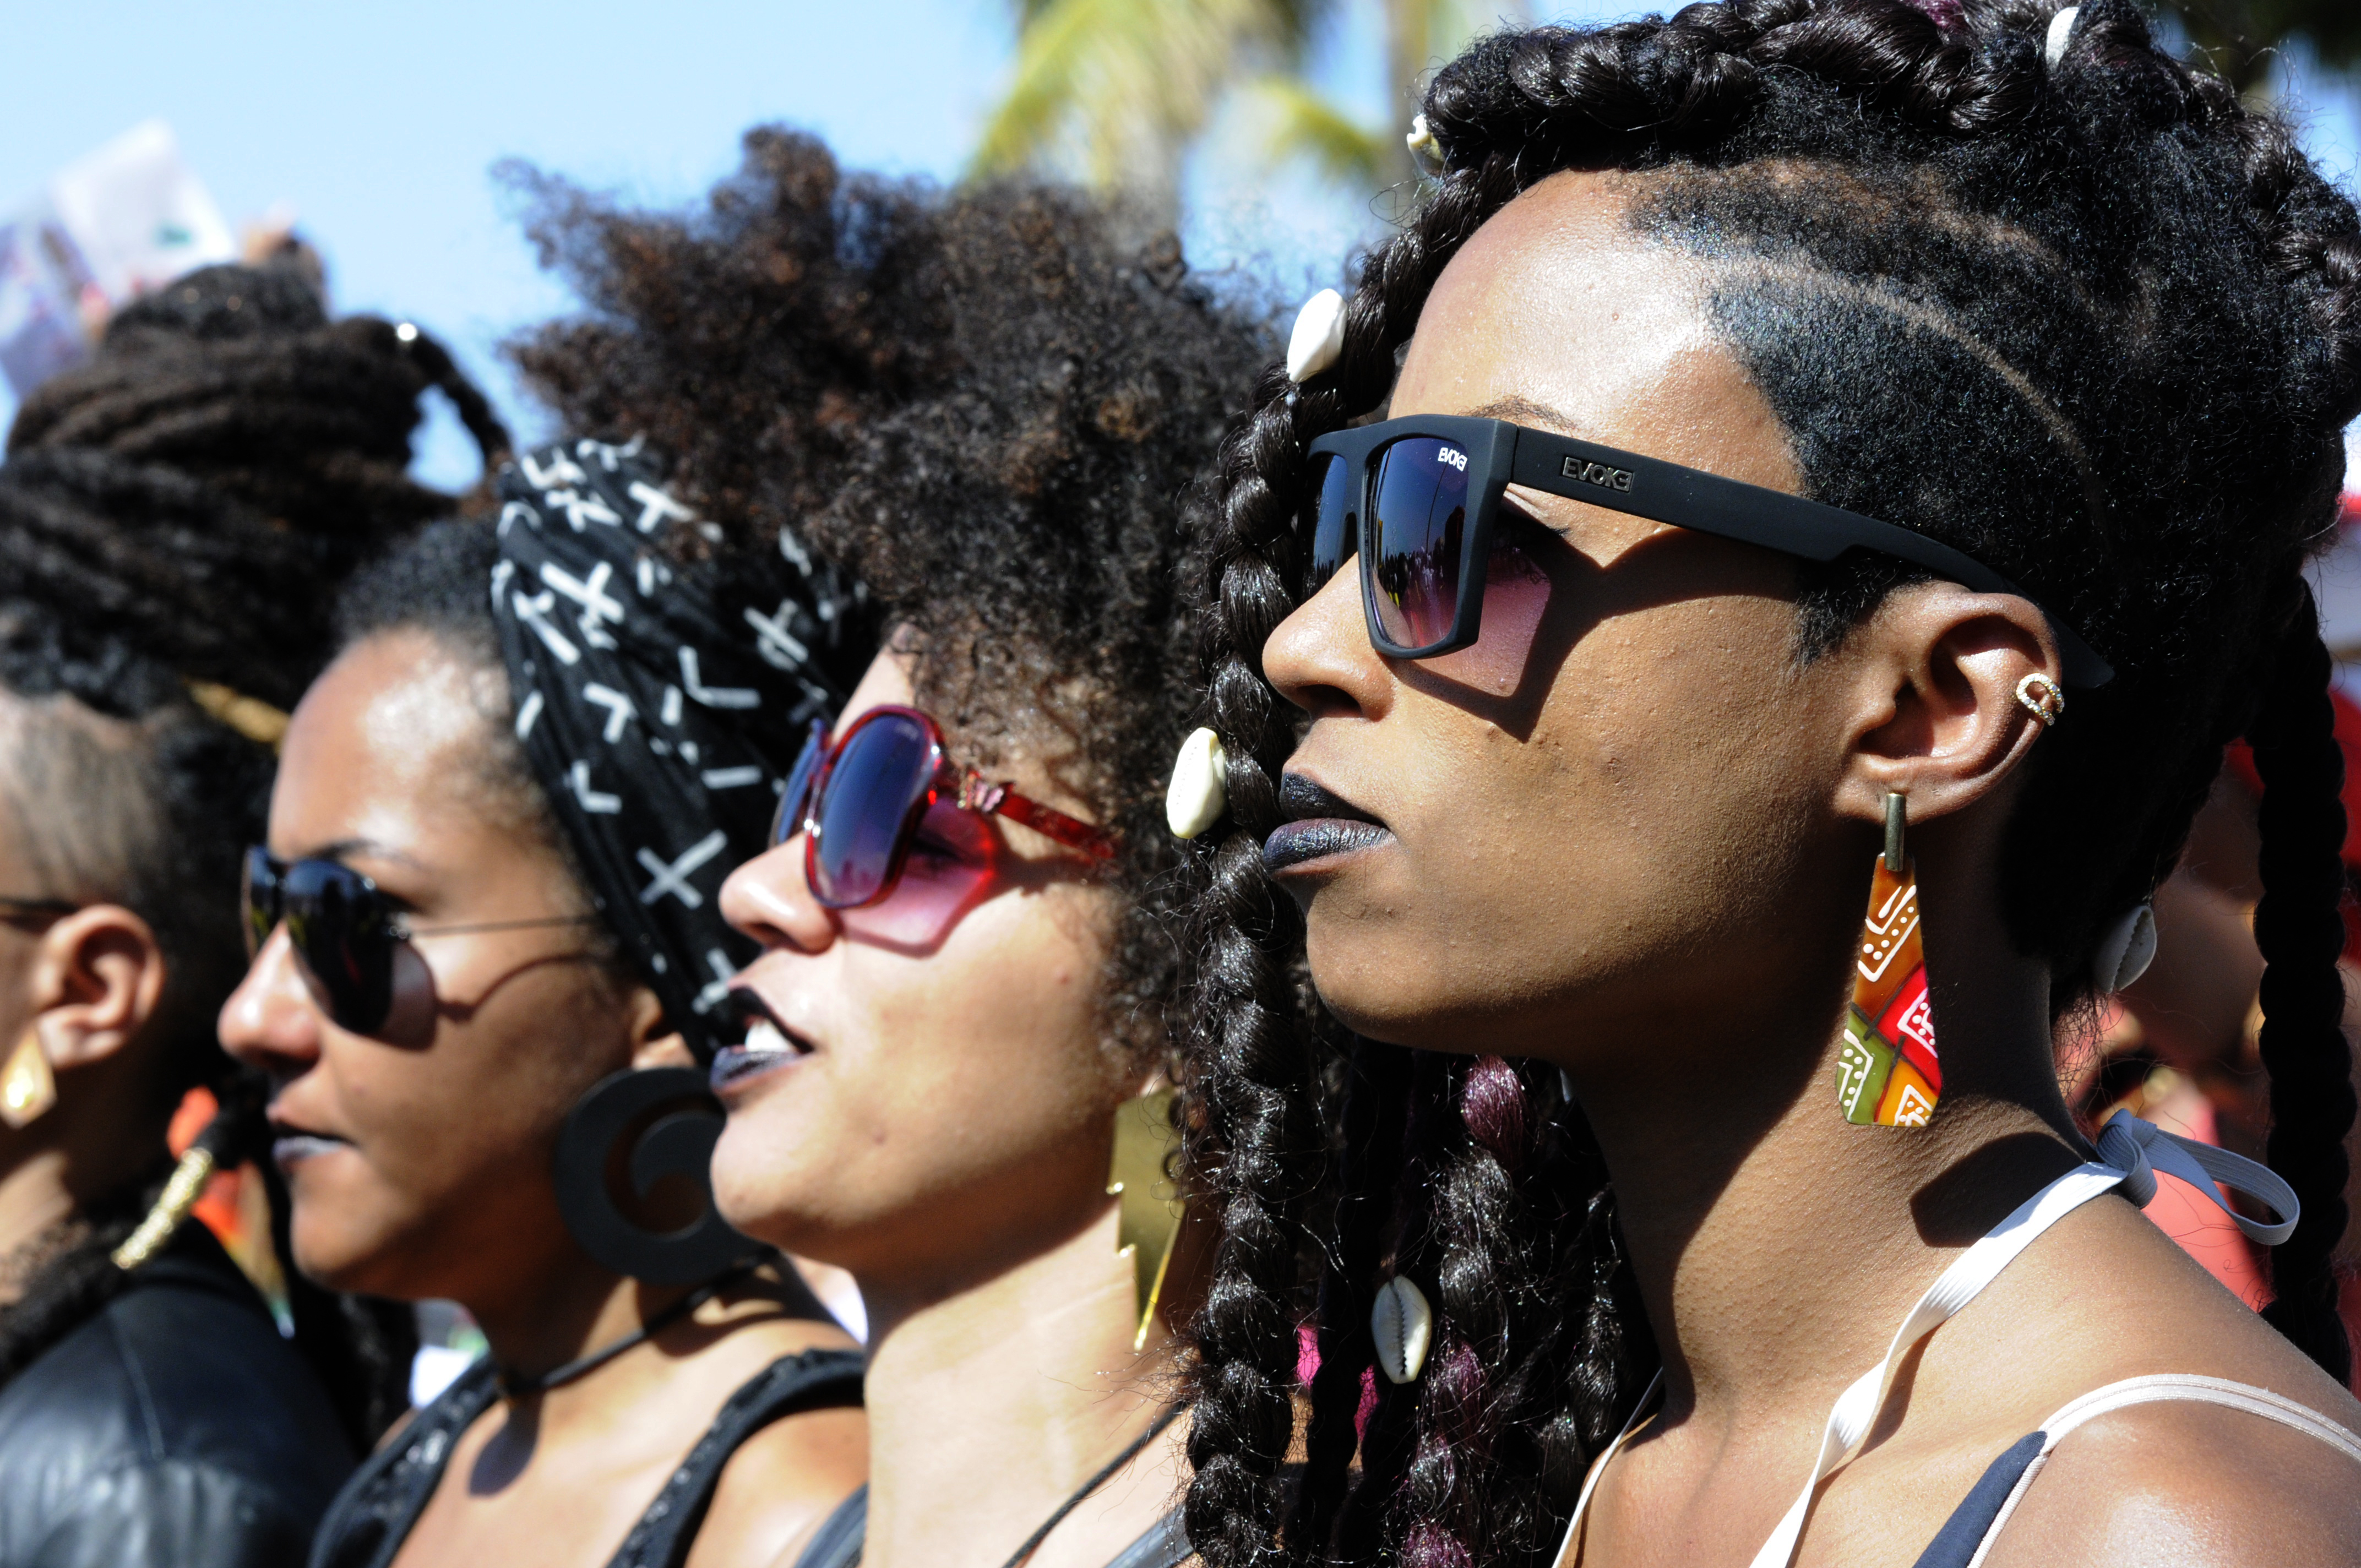 Marcha das Mulheres Negras em Copacabana - Fotos Marcello Almo (2)